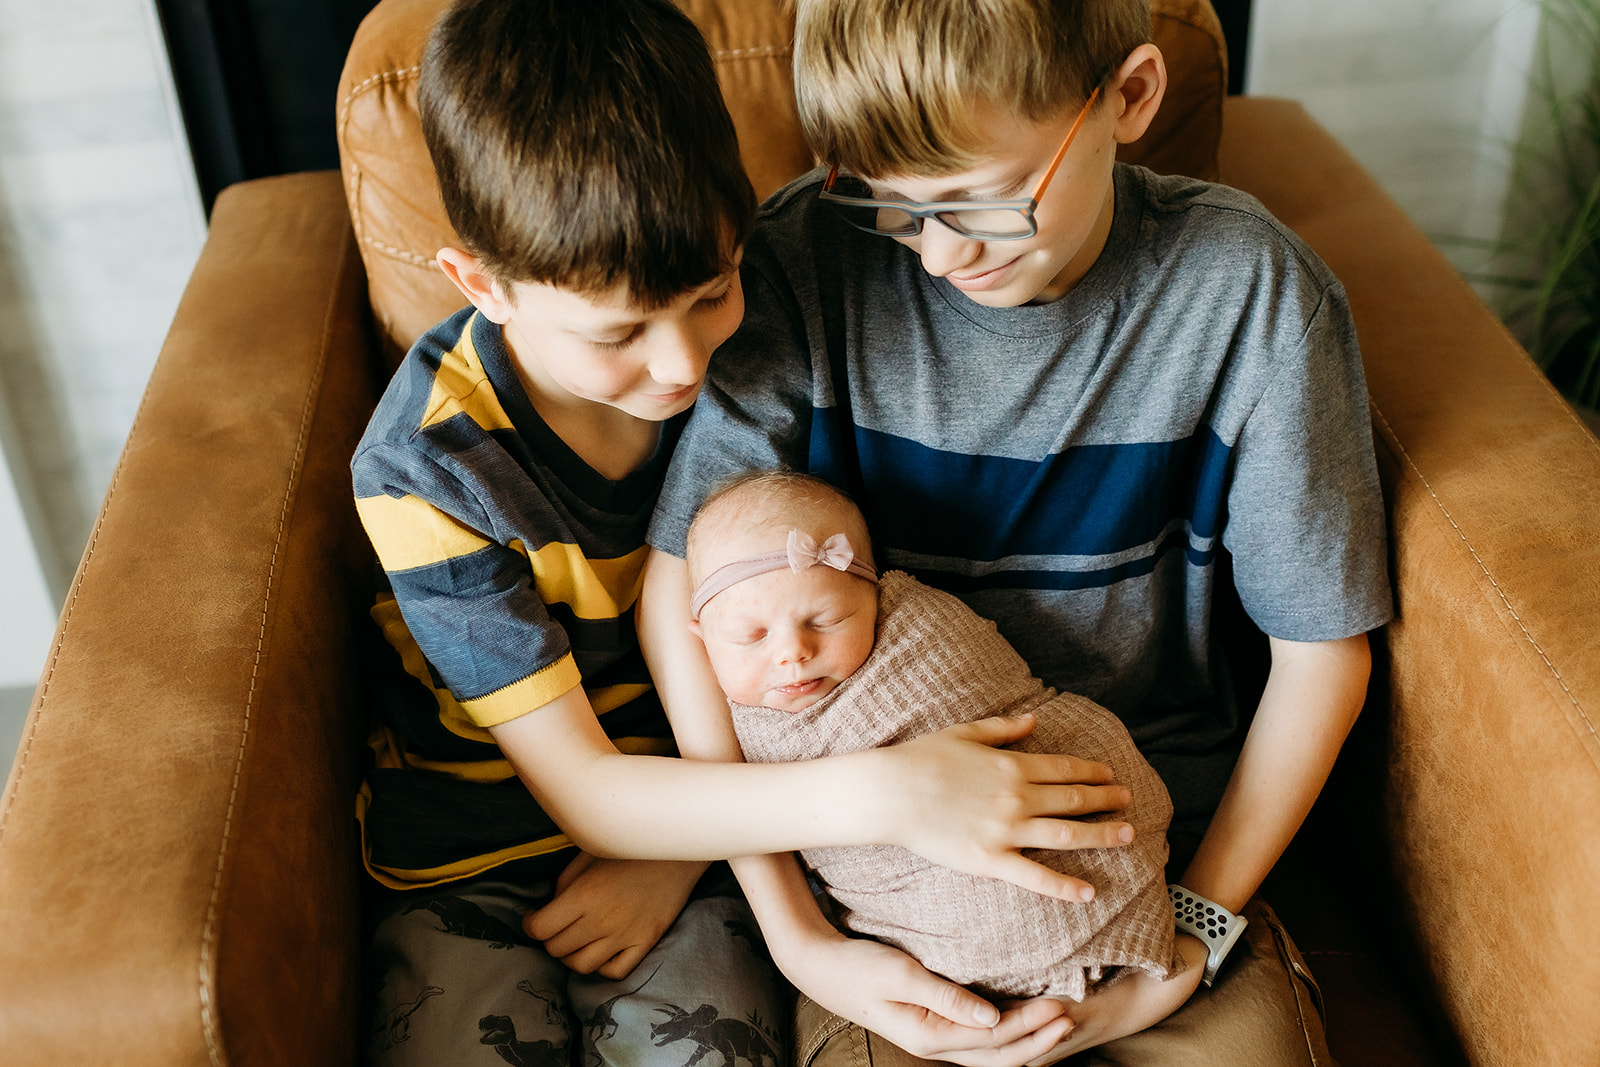 Denver school-age children in a newborn photoshoot